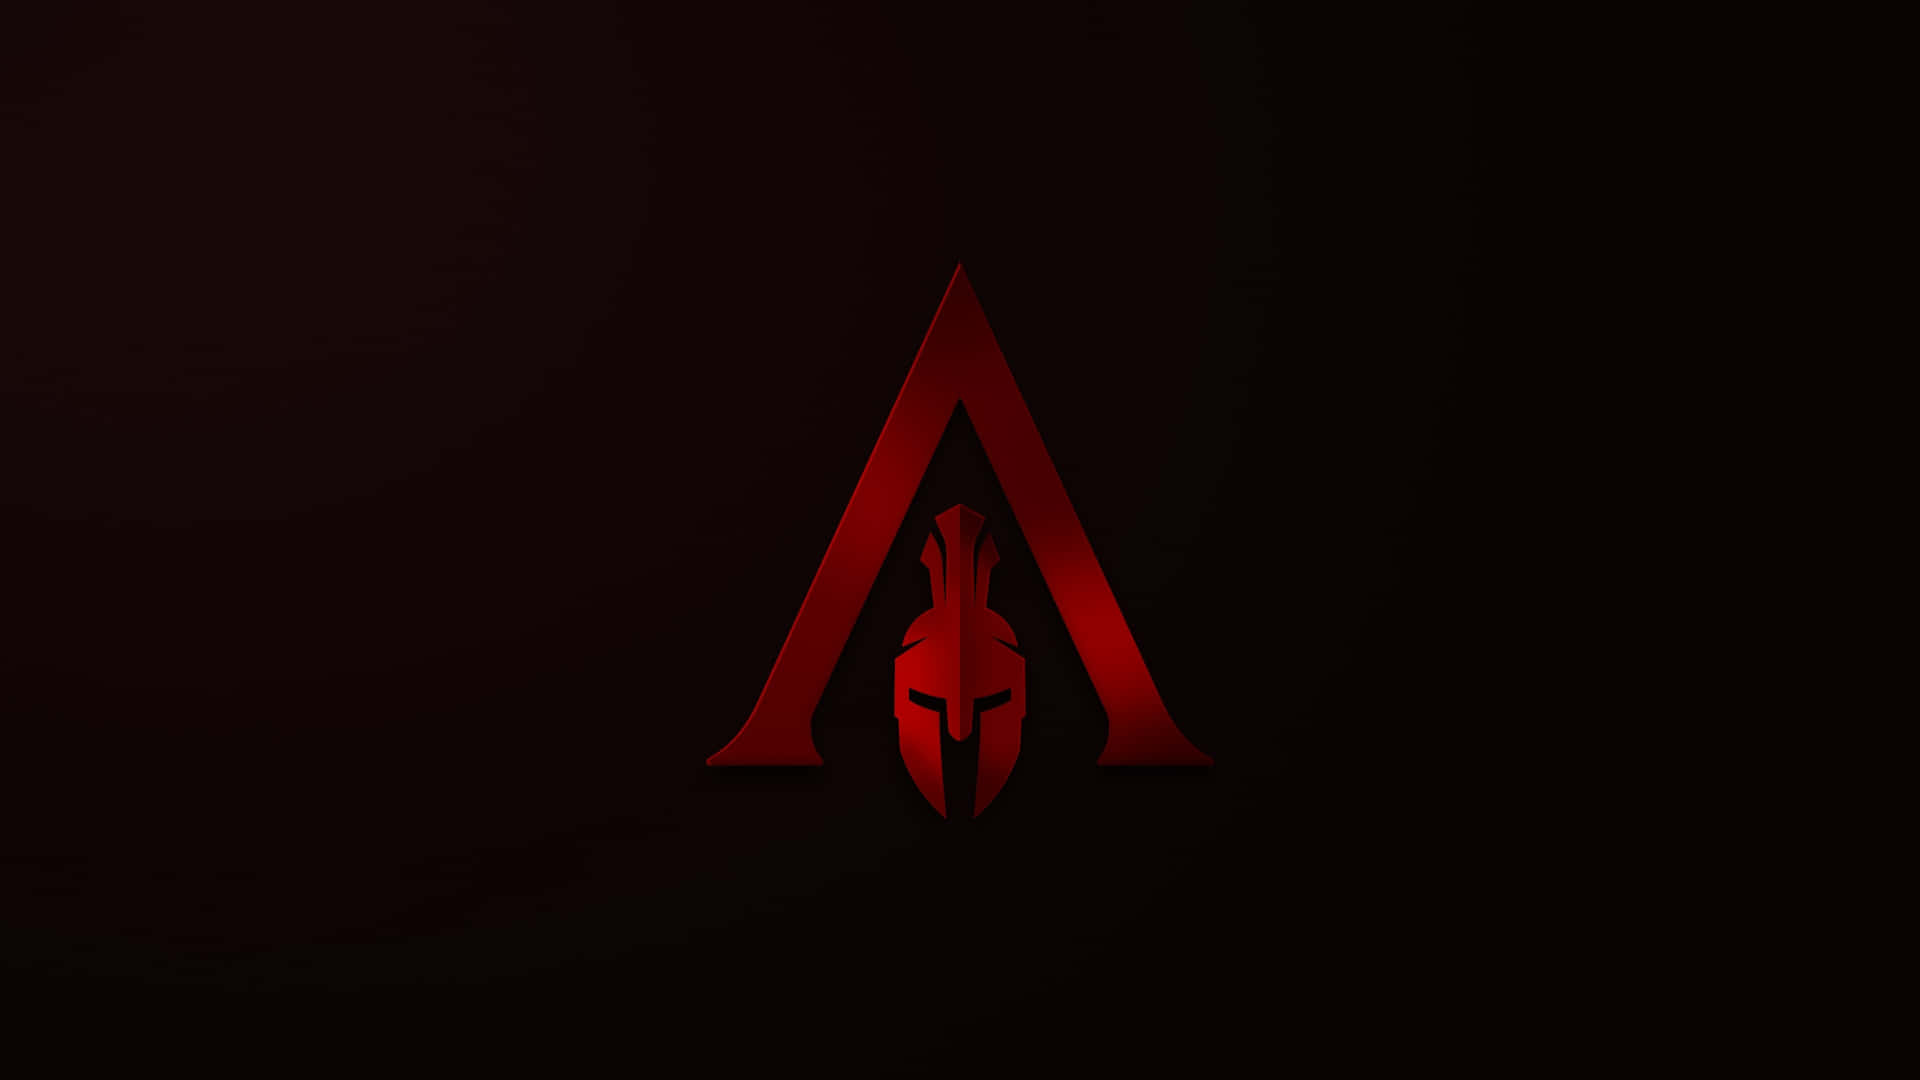 Fondode Pantalla De Assassin's Creed Odyssey Con El Ícono Rojo.